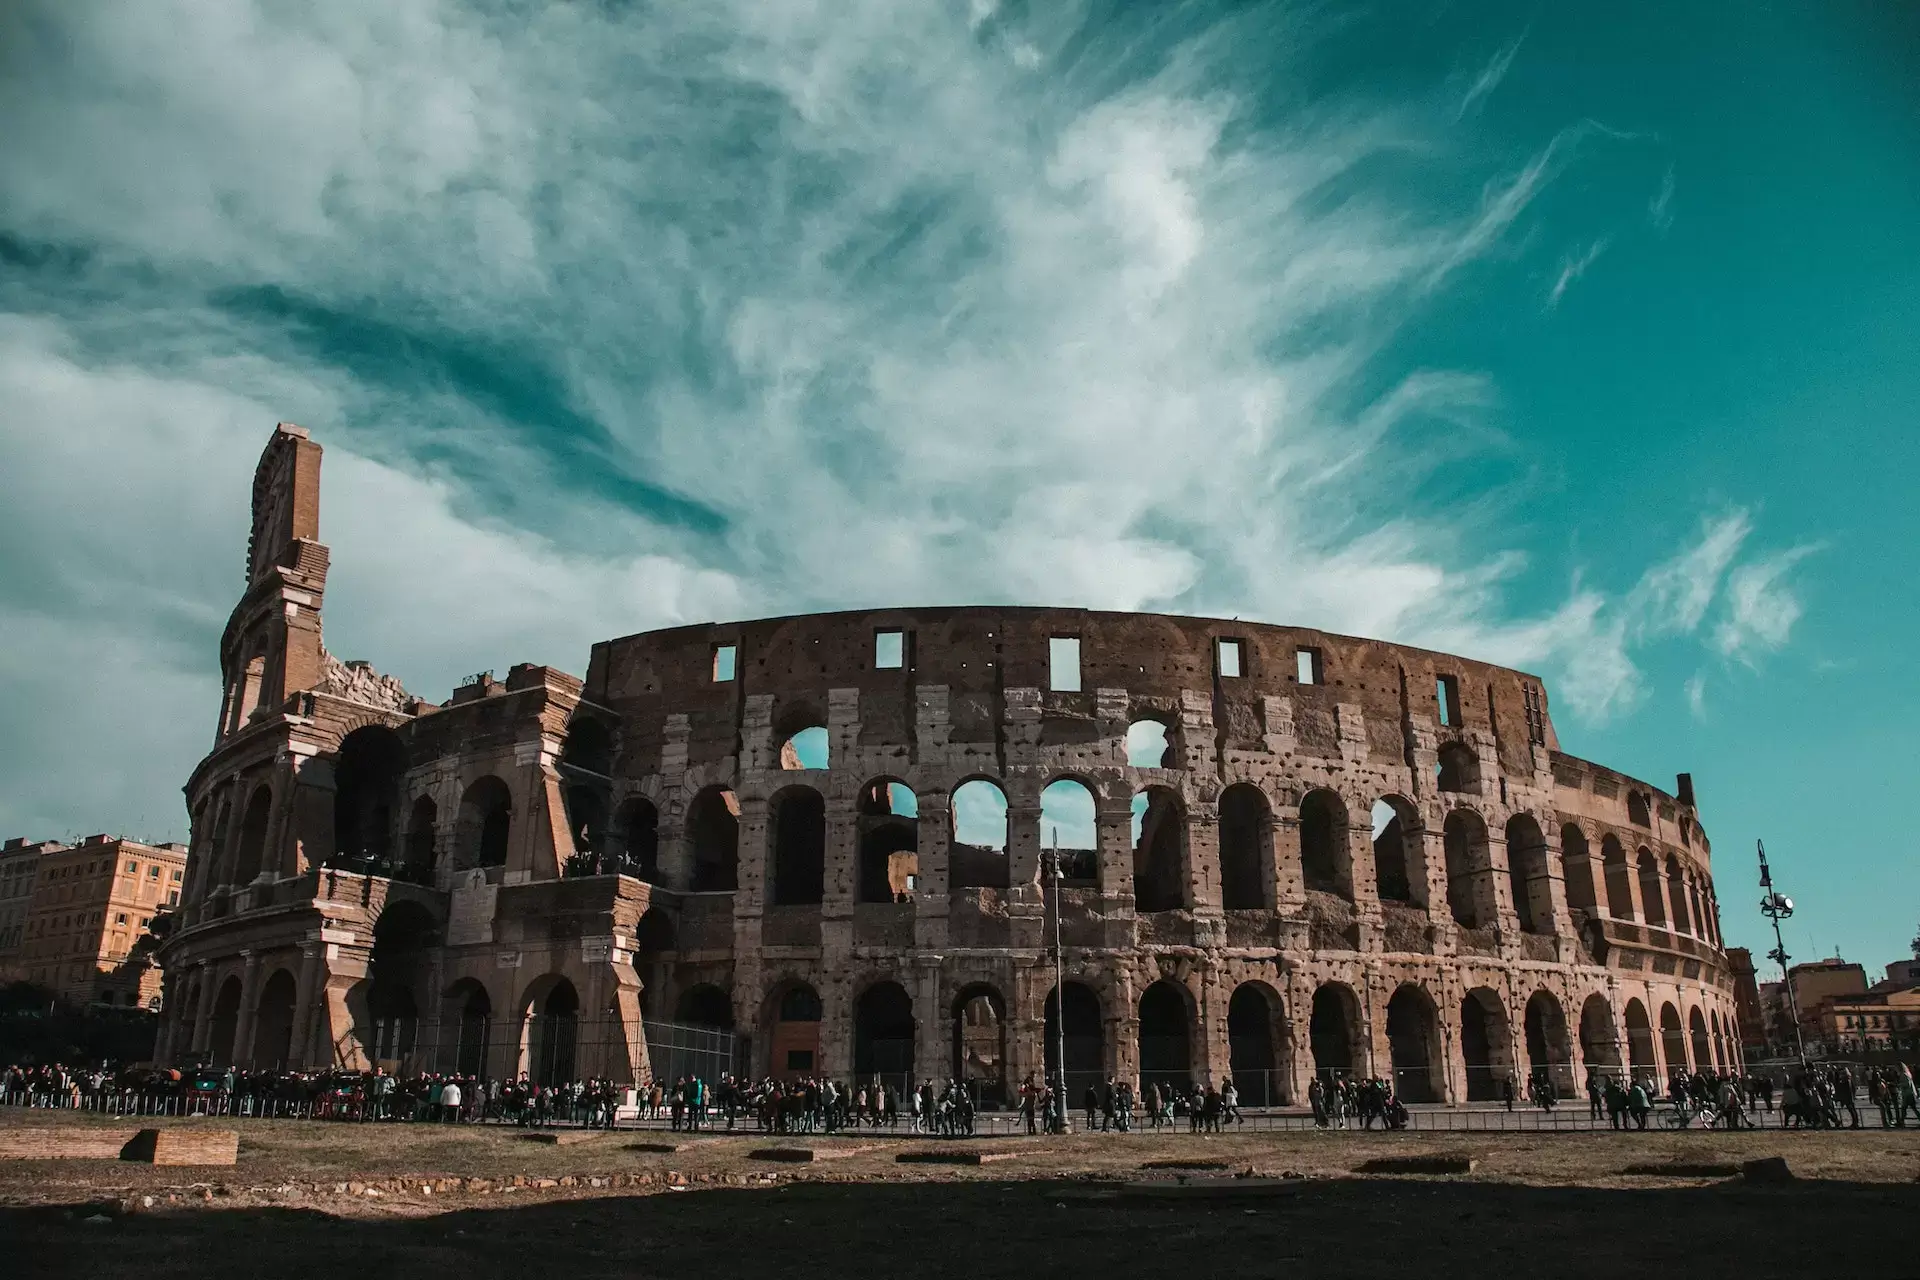 Scopri i 10 luoghi e monumenti da vedere a Roma, la città eterna che ti stupirà con la sua storia, la sua arte e la sua cultura.